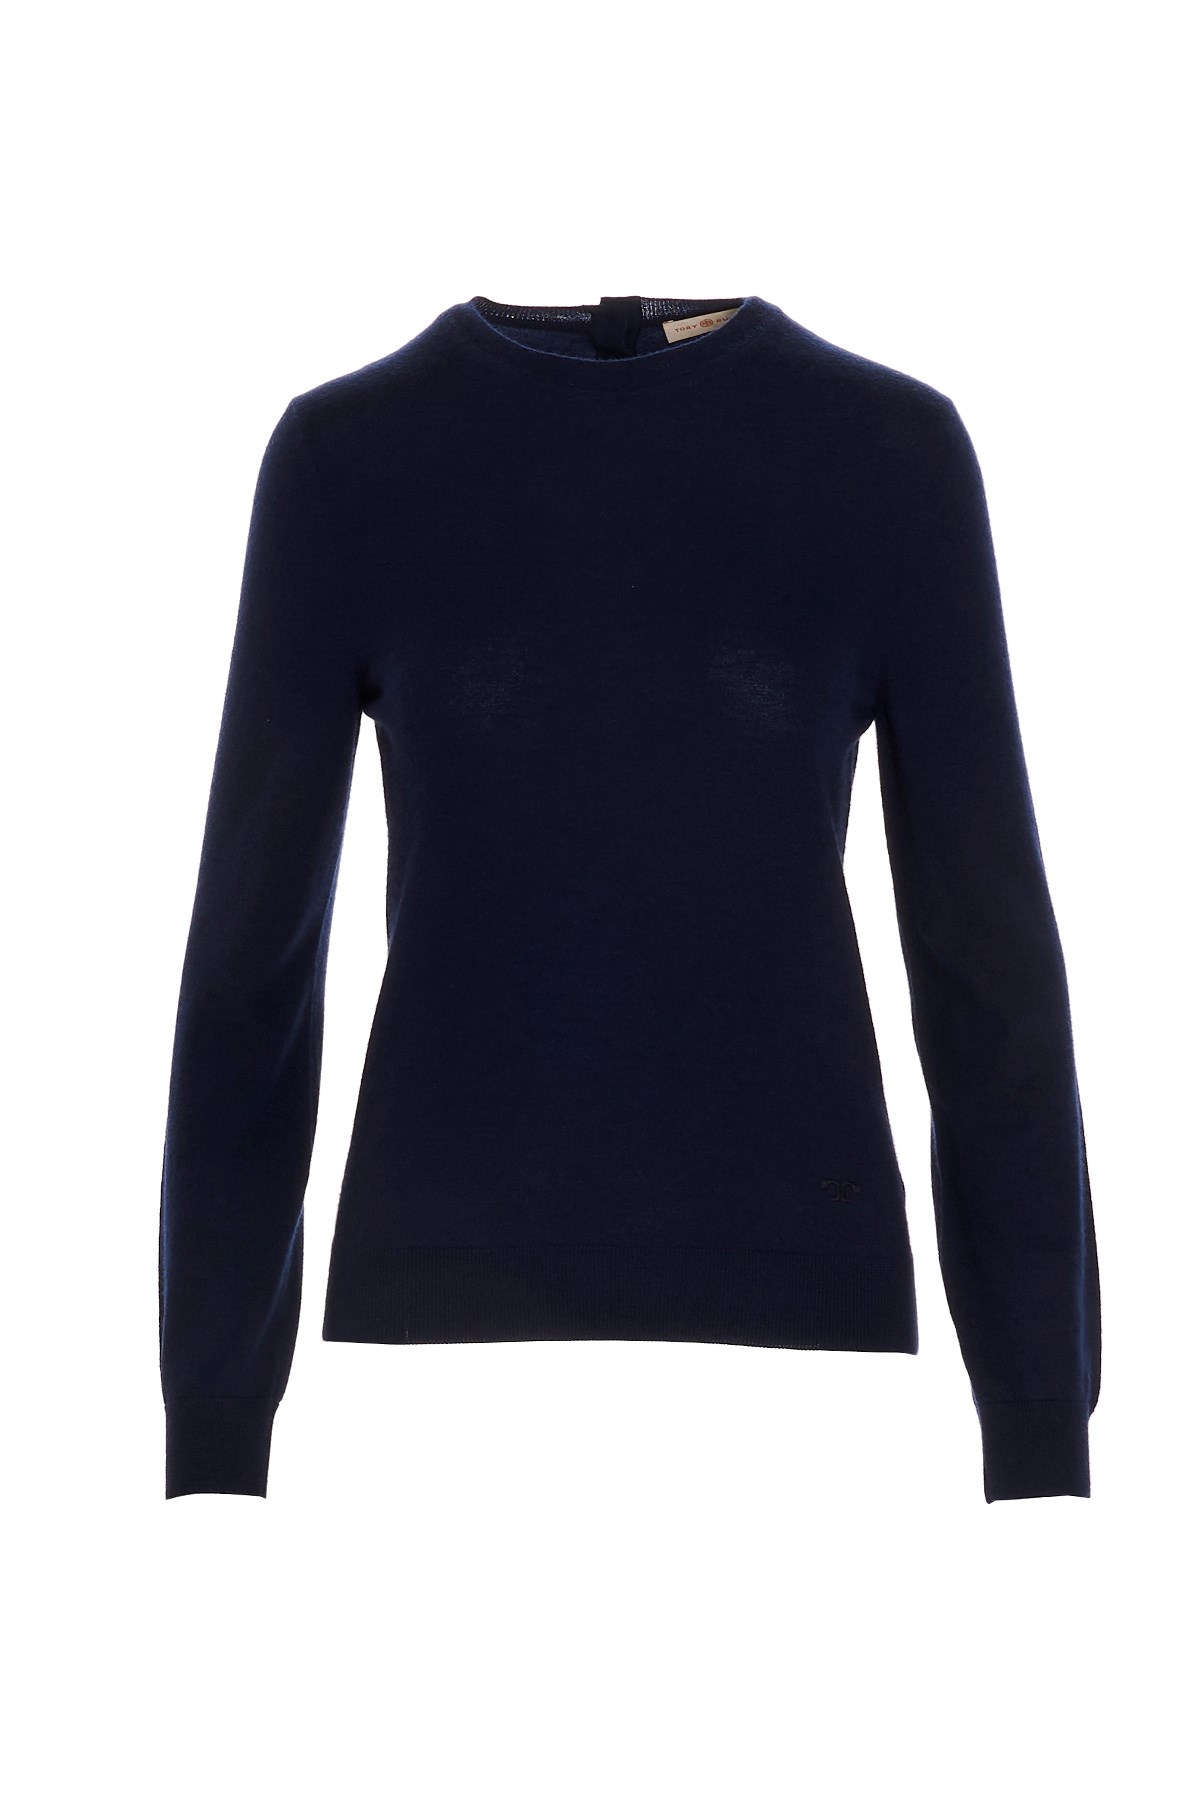 TORY BURCH 'Iberia'cashmere  Sweater